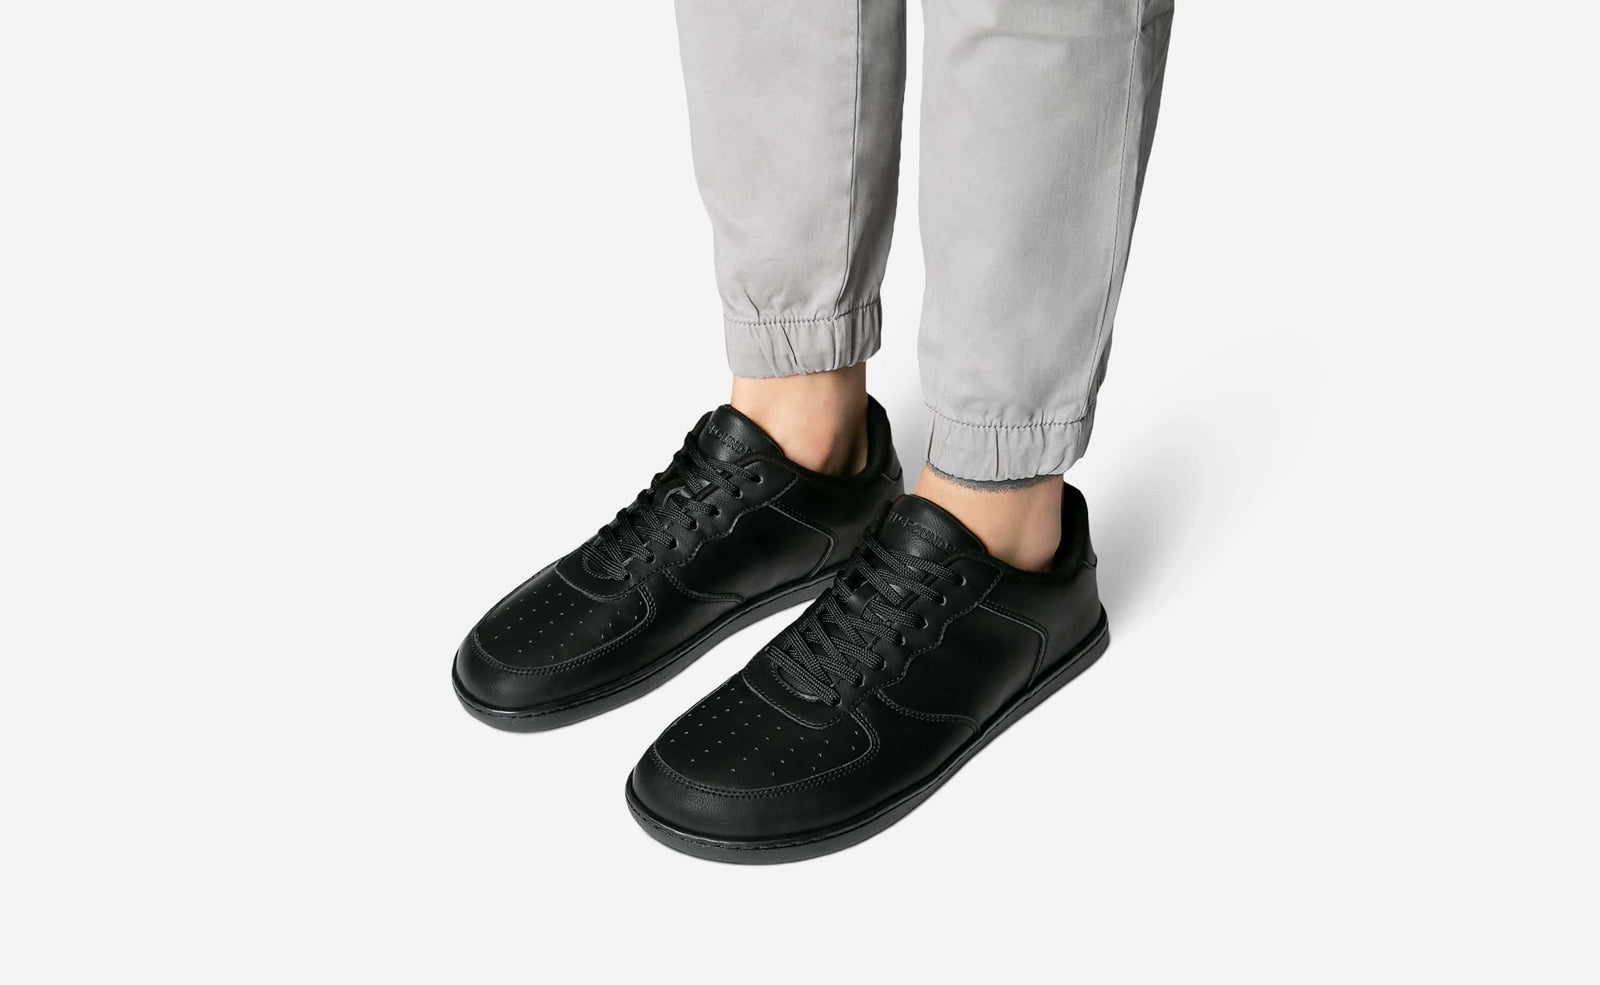 Louis Vuitton Printed Sock Sneakers - Black Sneakers, Shoes